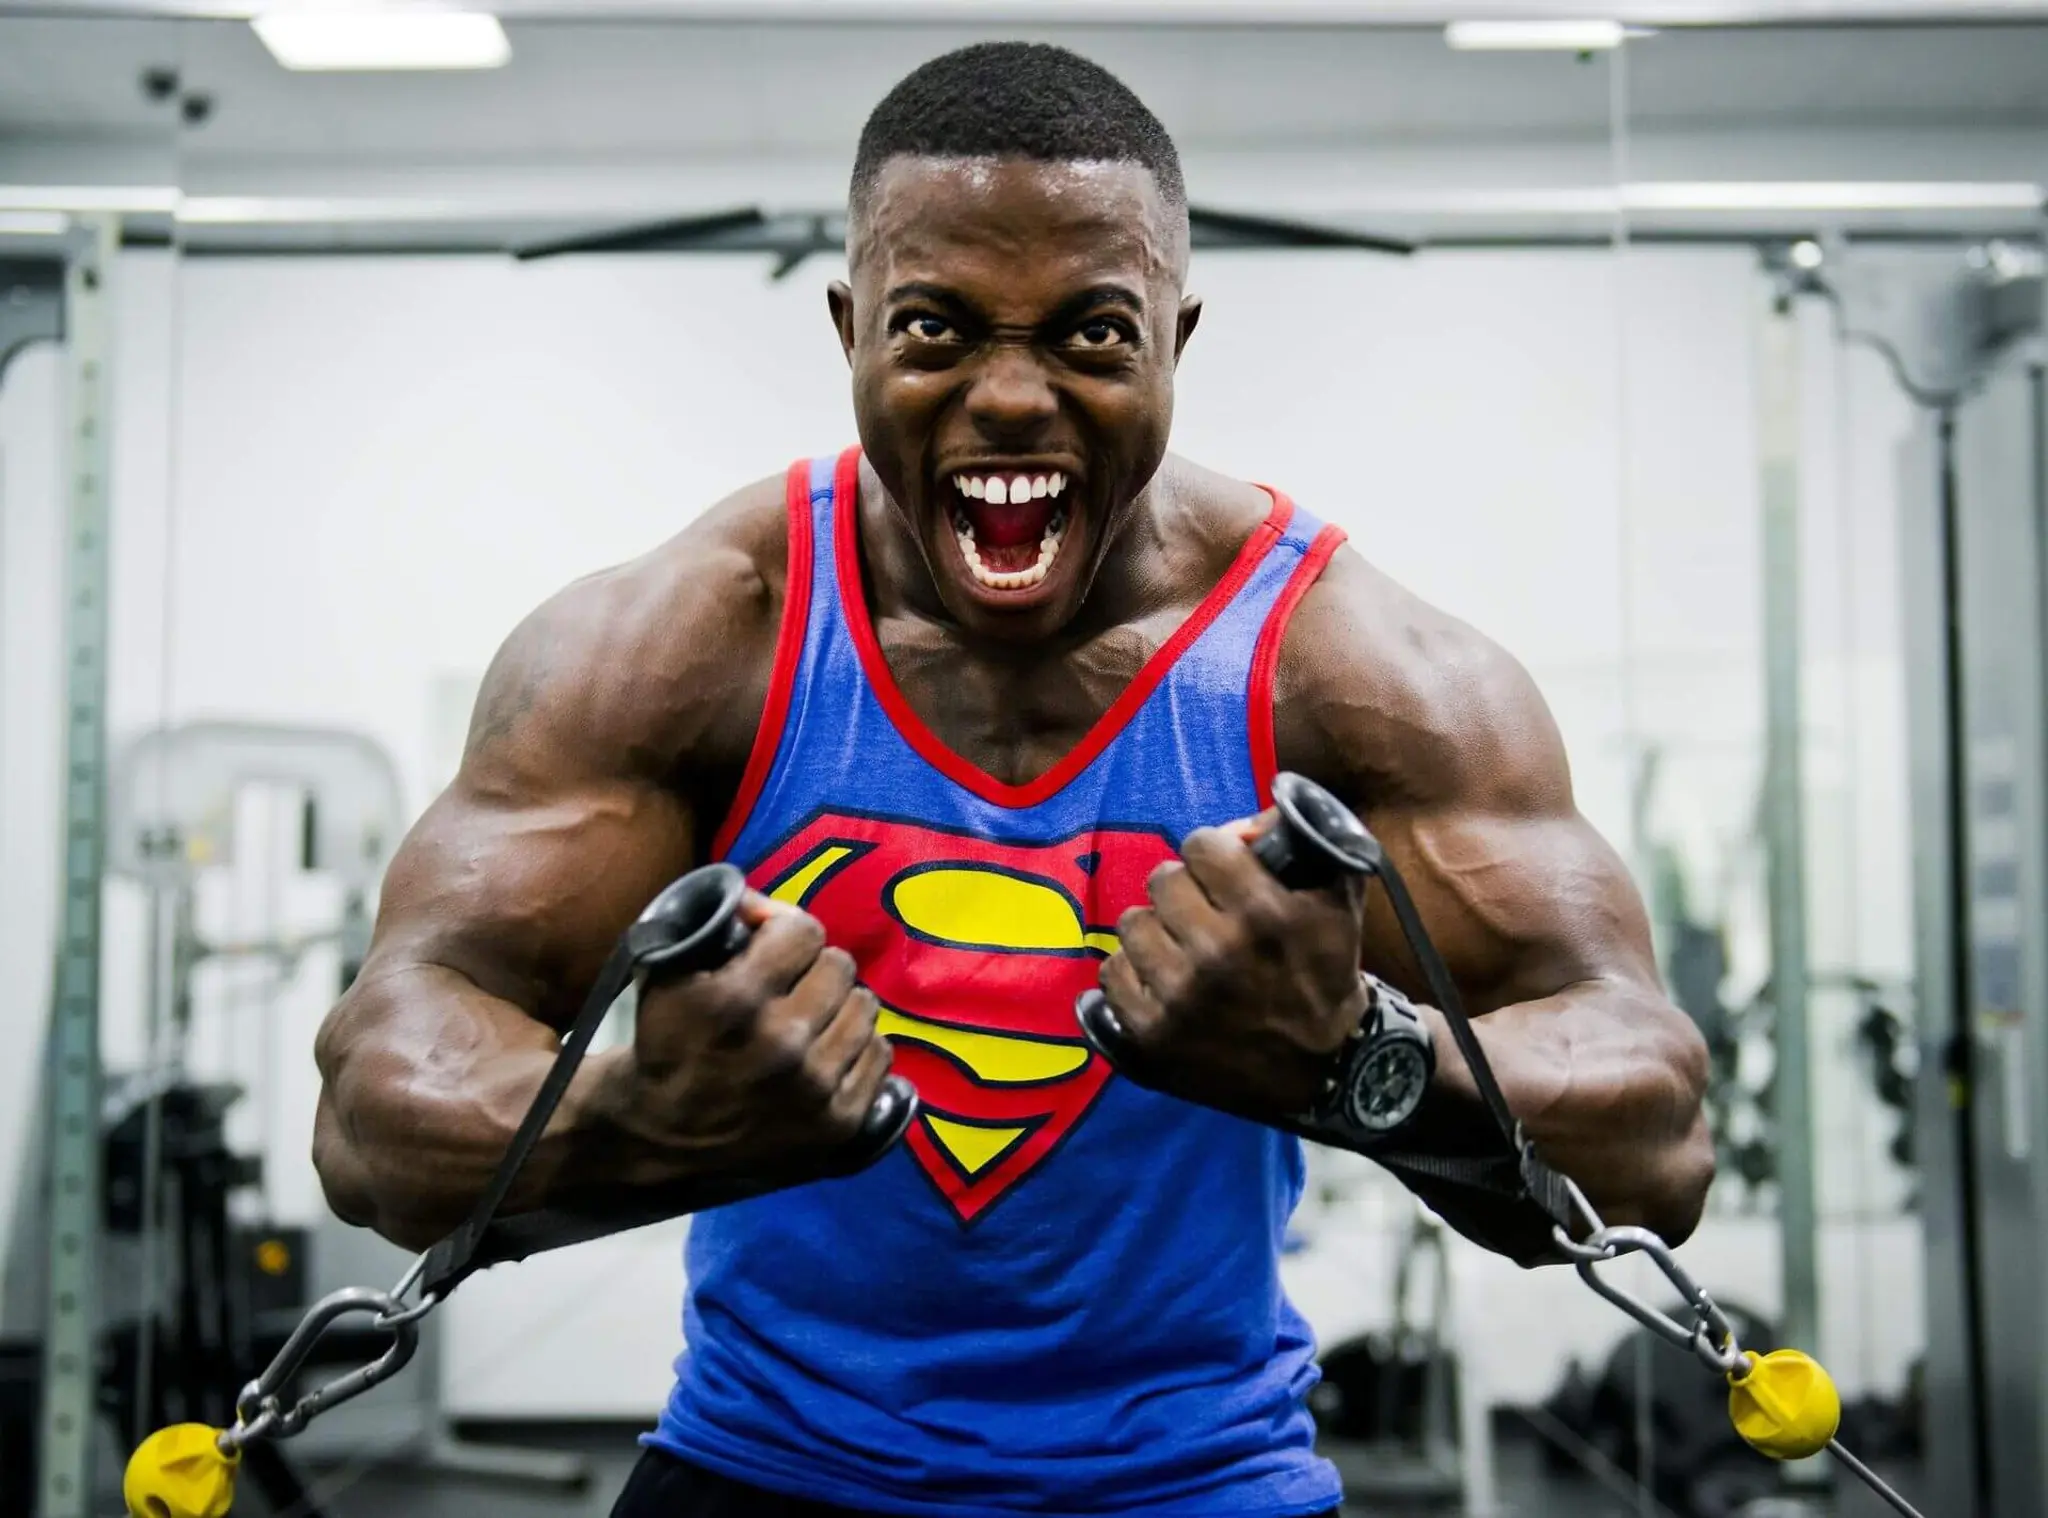 Mann med store muskler som utfører en treningsøvelse